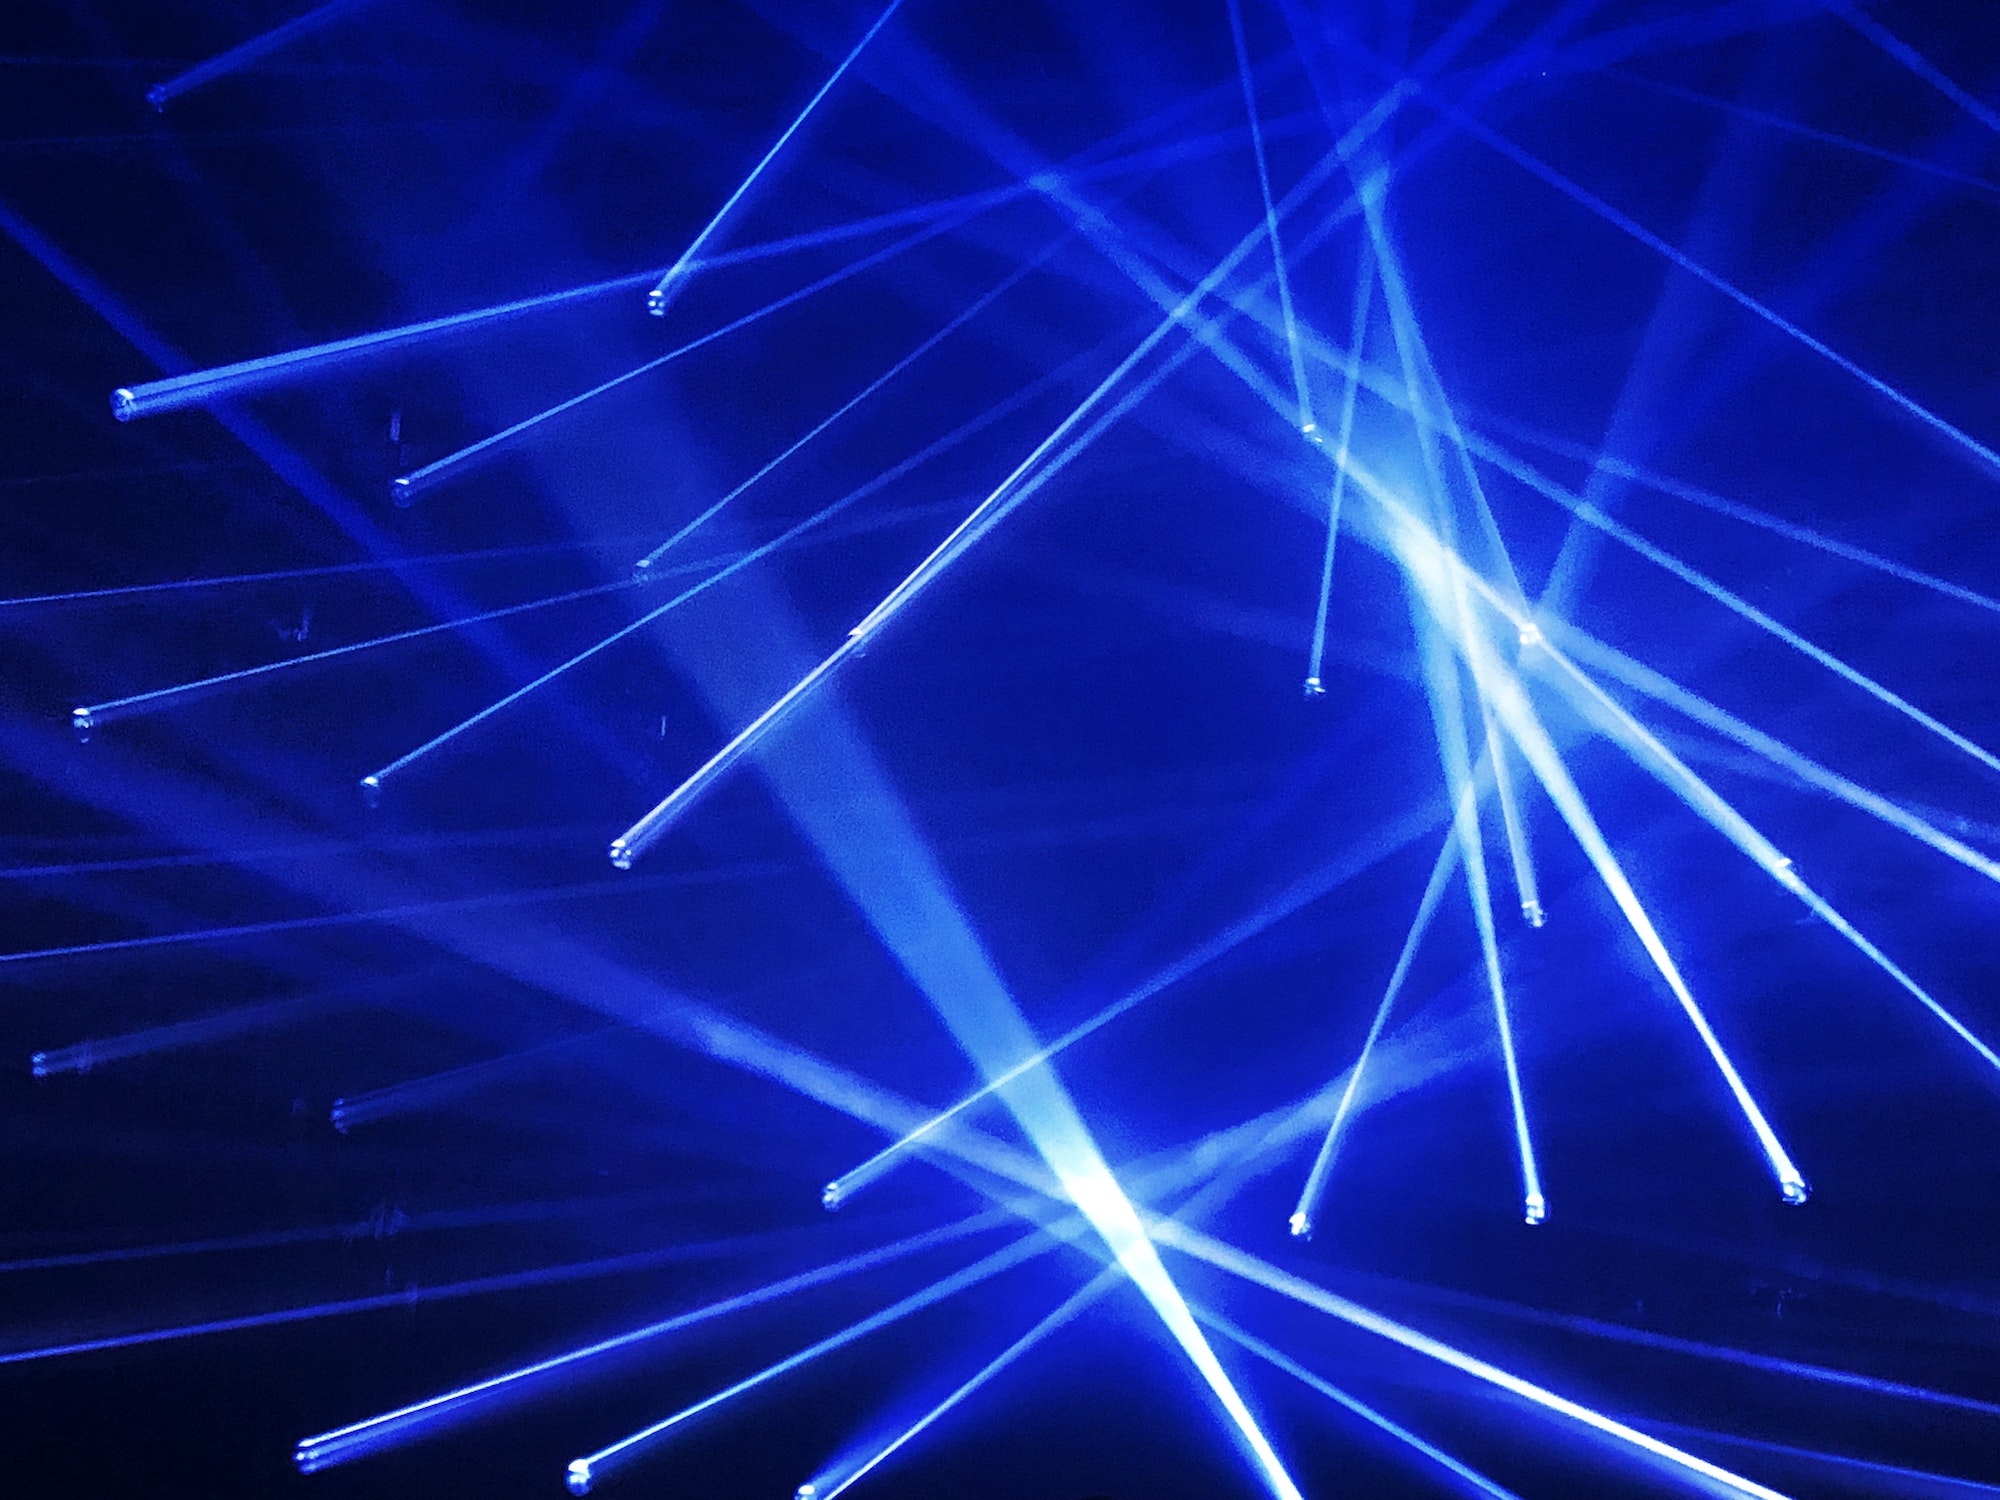 Blue laser lights show